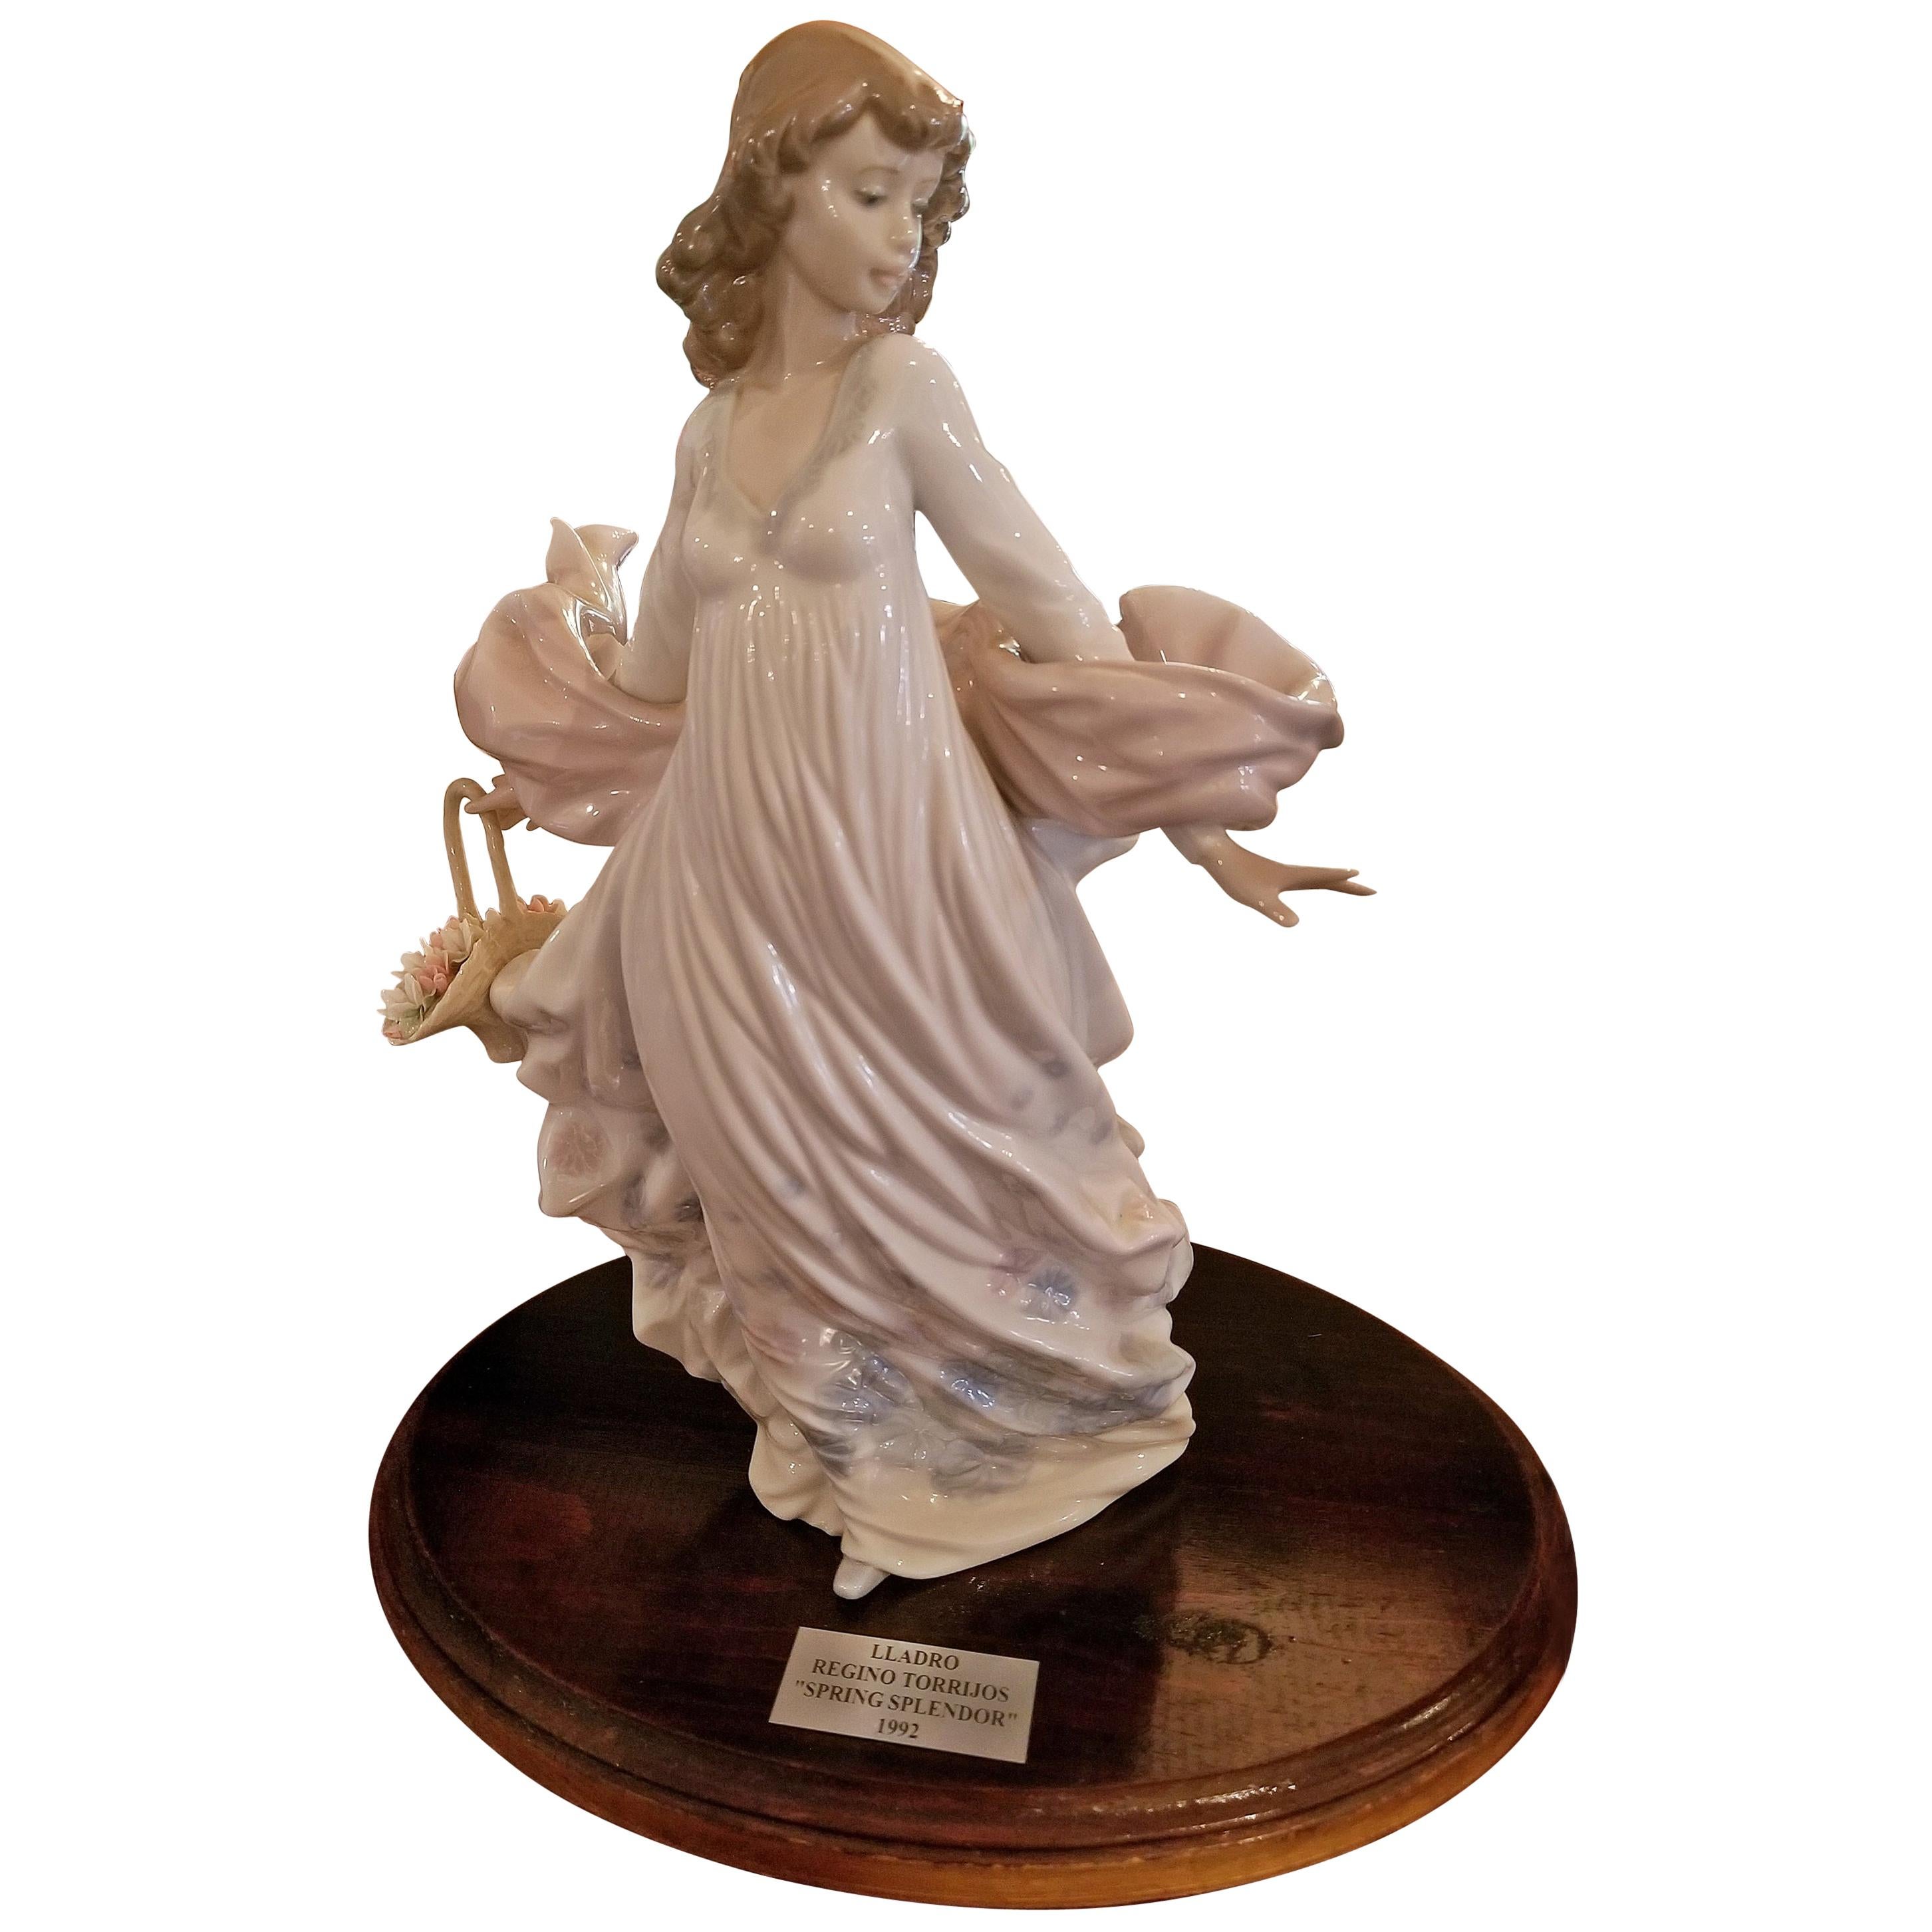 Lladro Spanish Porcelain Figurine of Spring Splendor 'Retired'